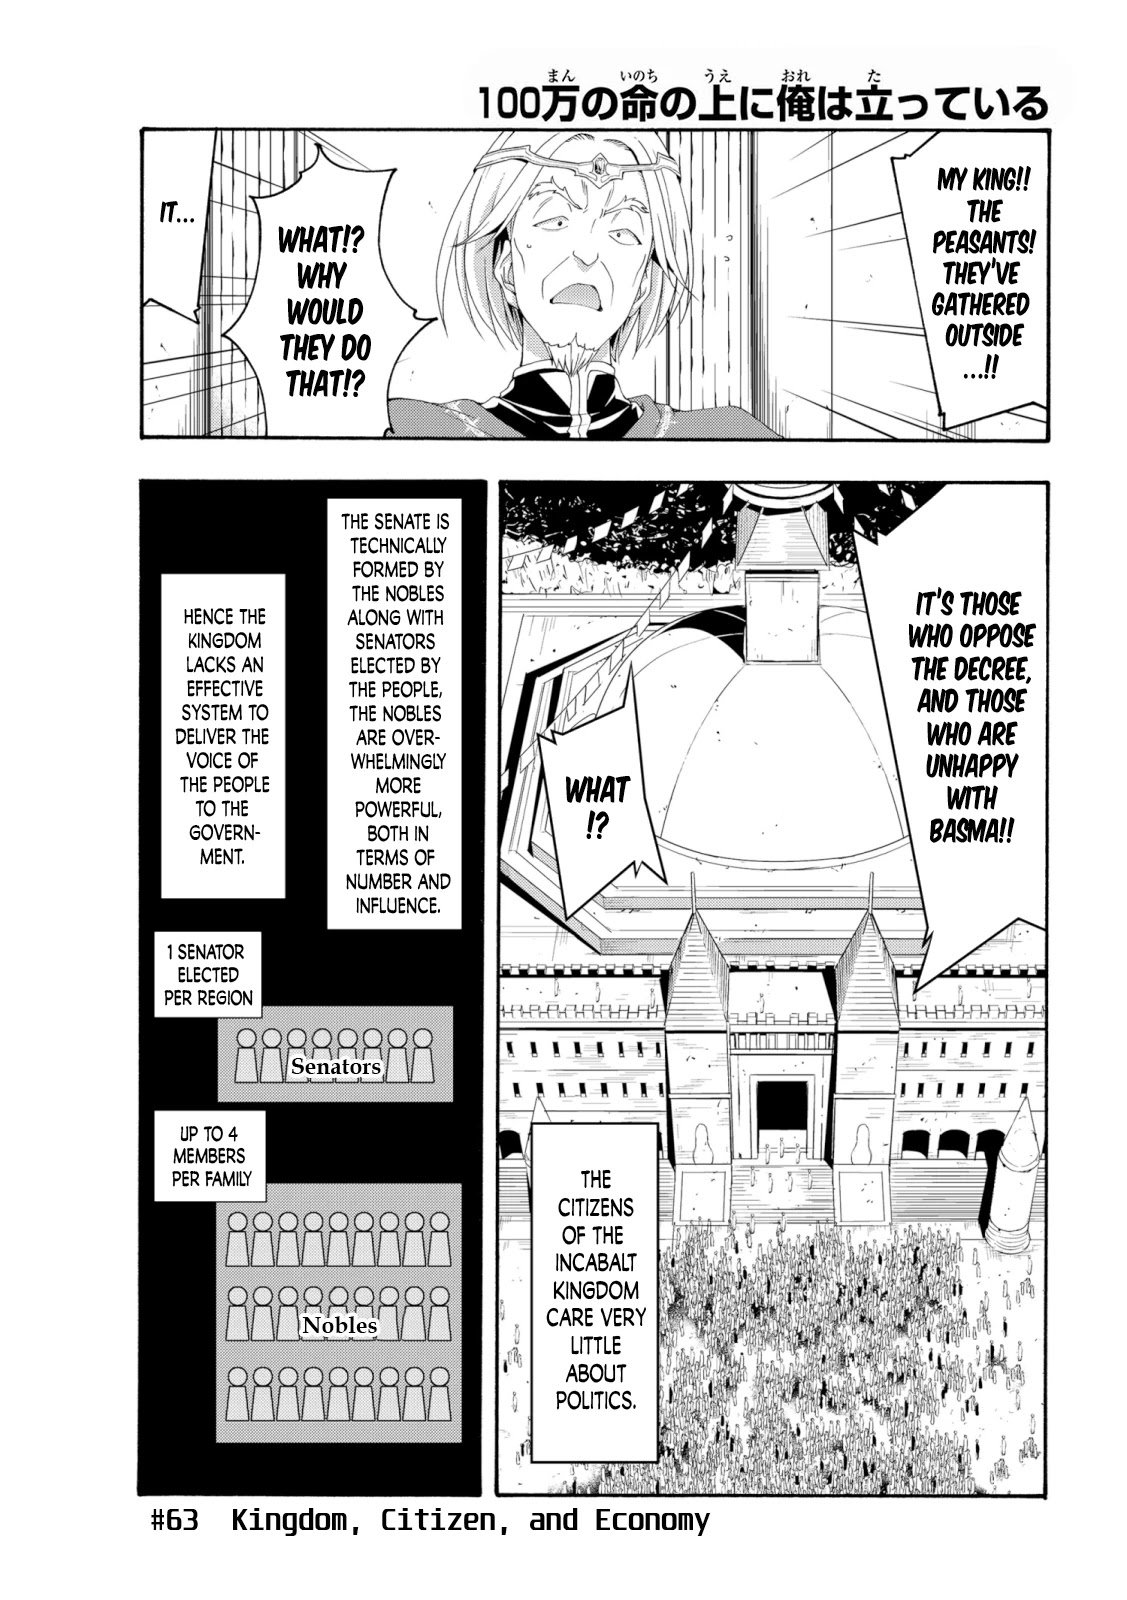 Read 100-man no Inochi no Ue ni Ore wa Tatte Iru Manga English [New  Chapters] Online Free - MangaClash